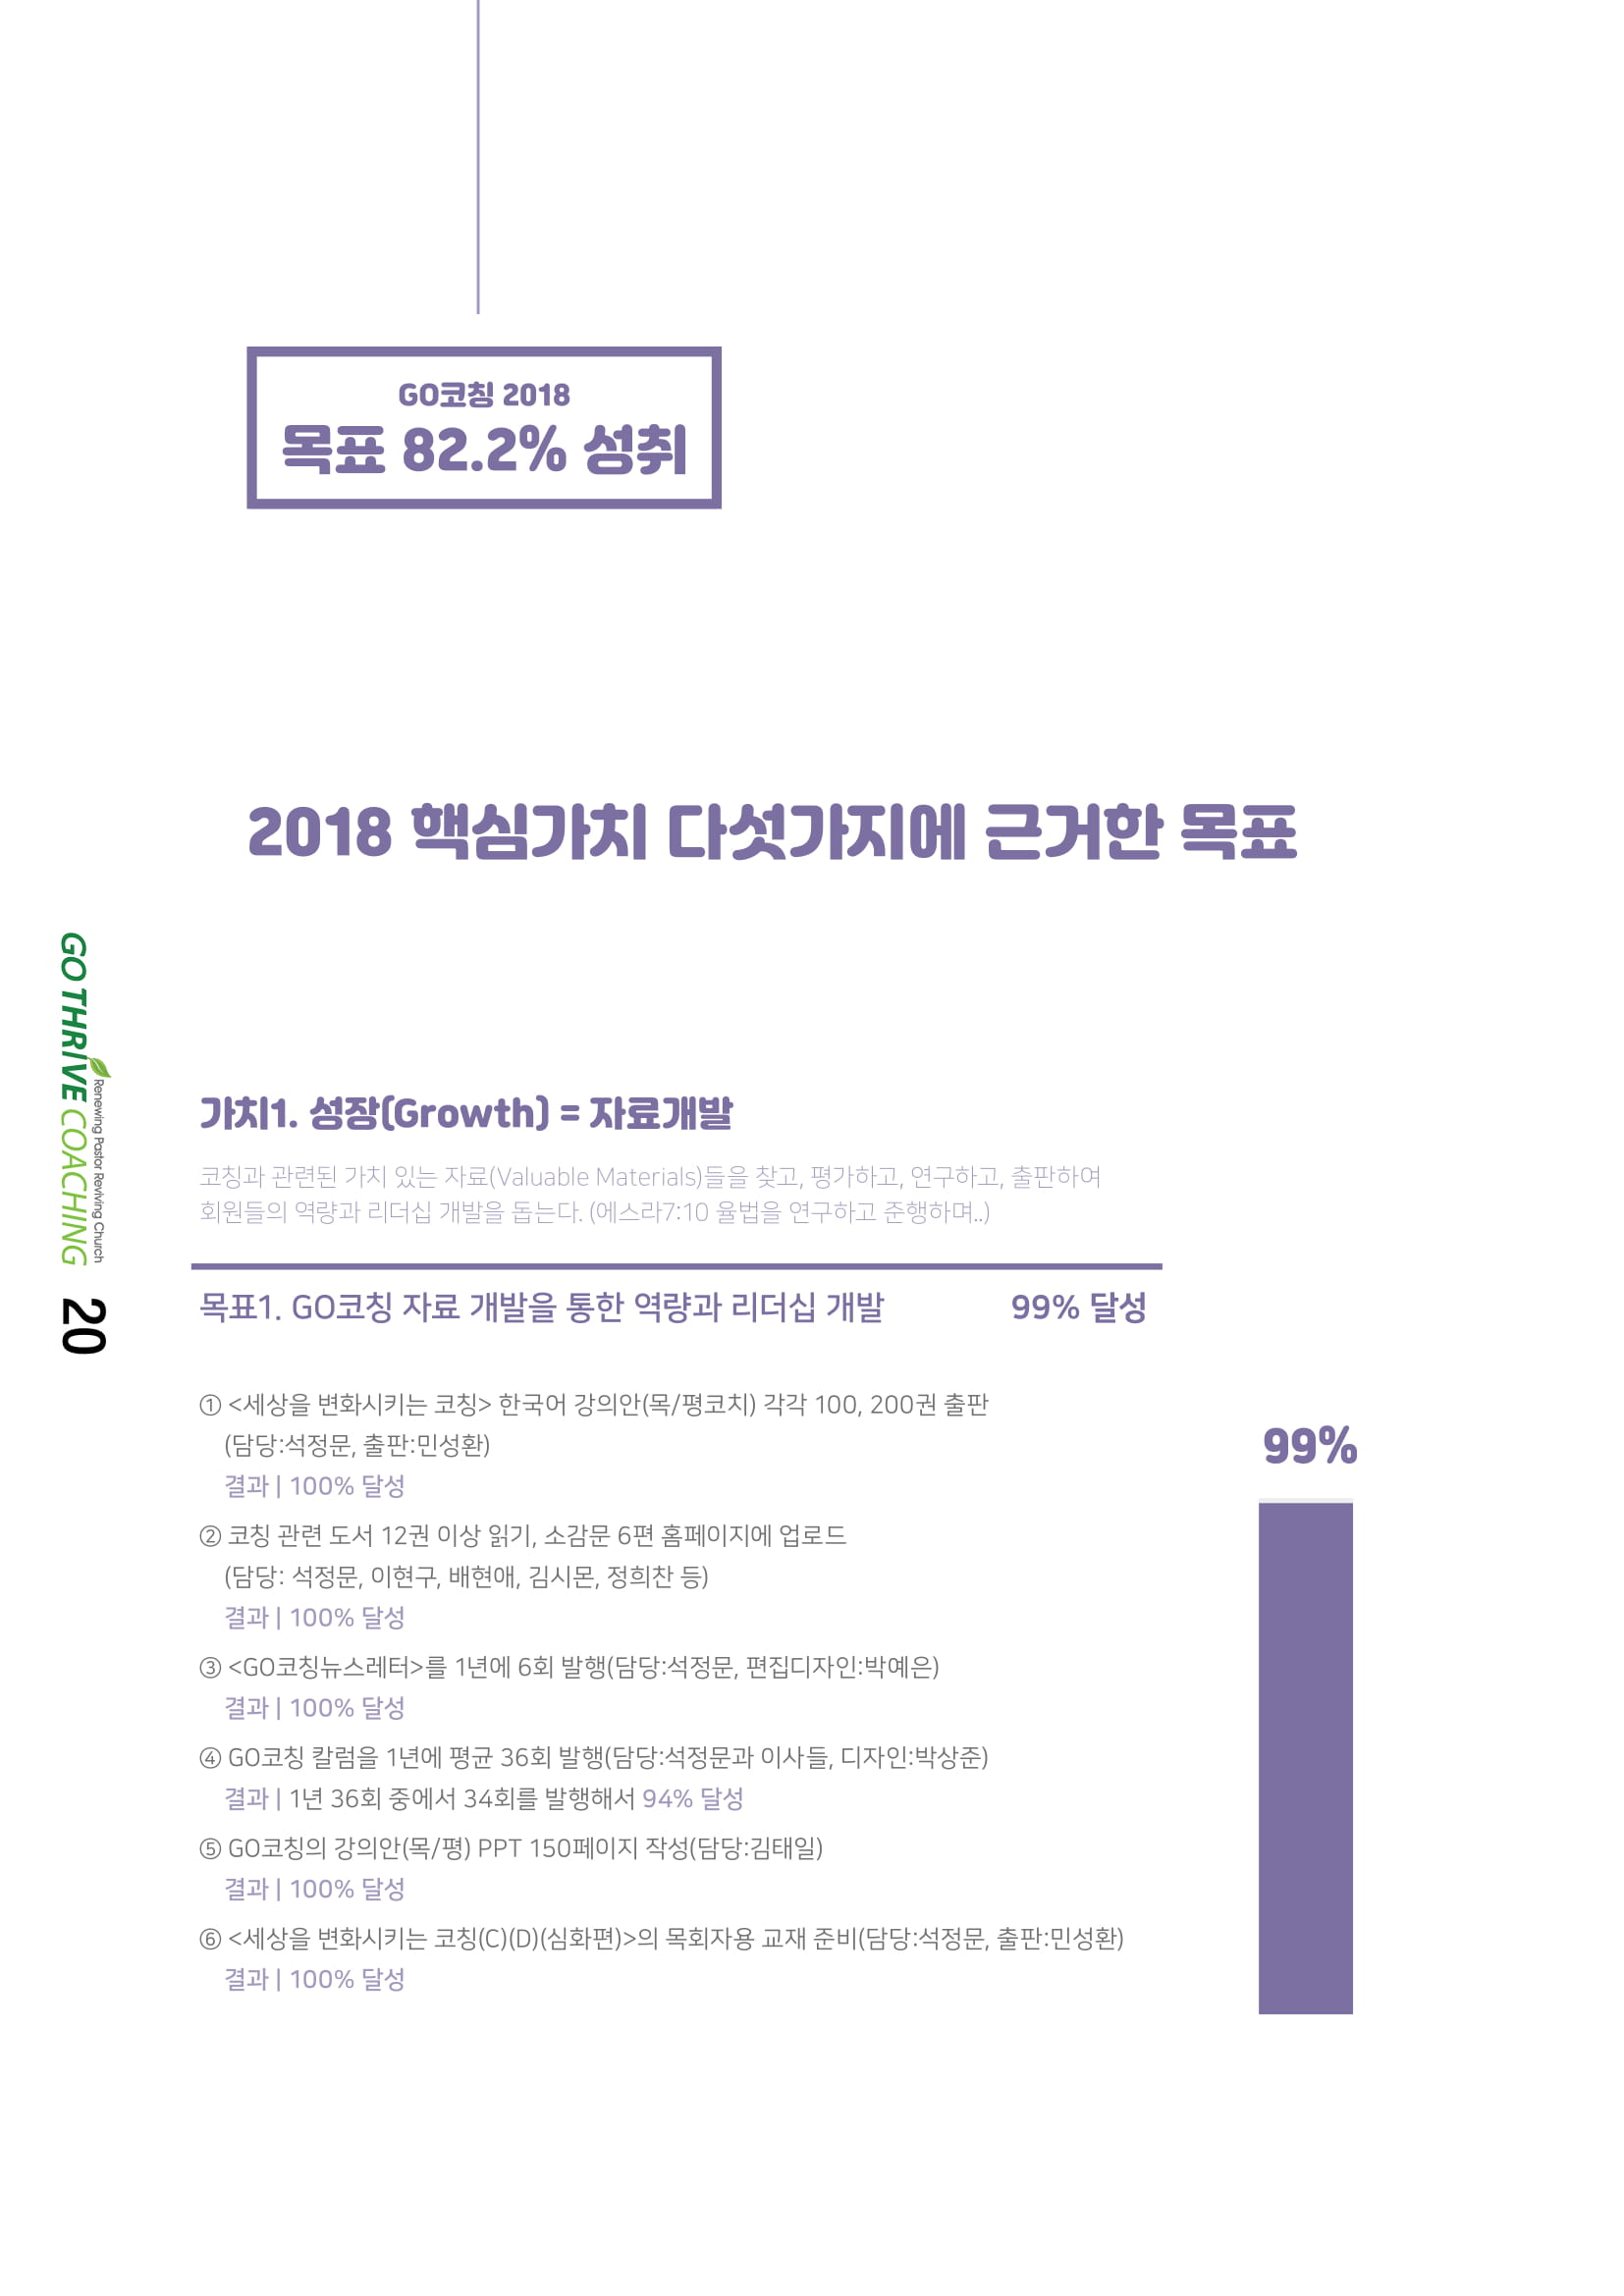 2018 11-12월호_5_2018목표달성율-2.jpg